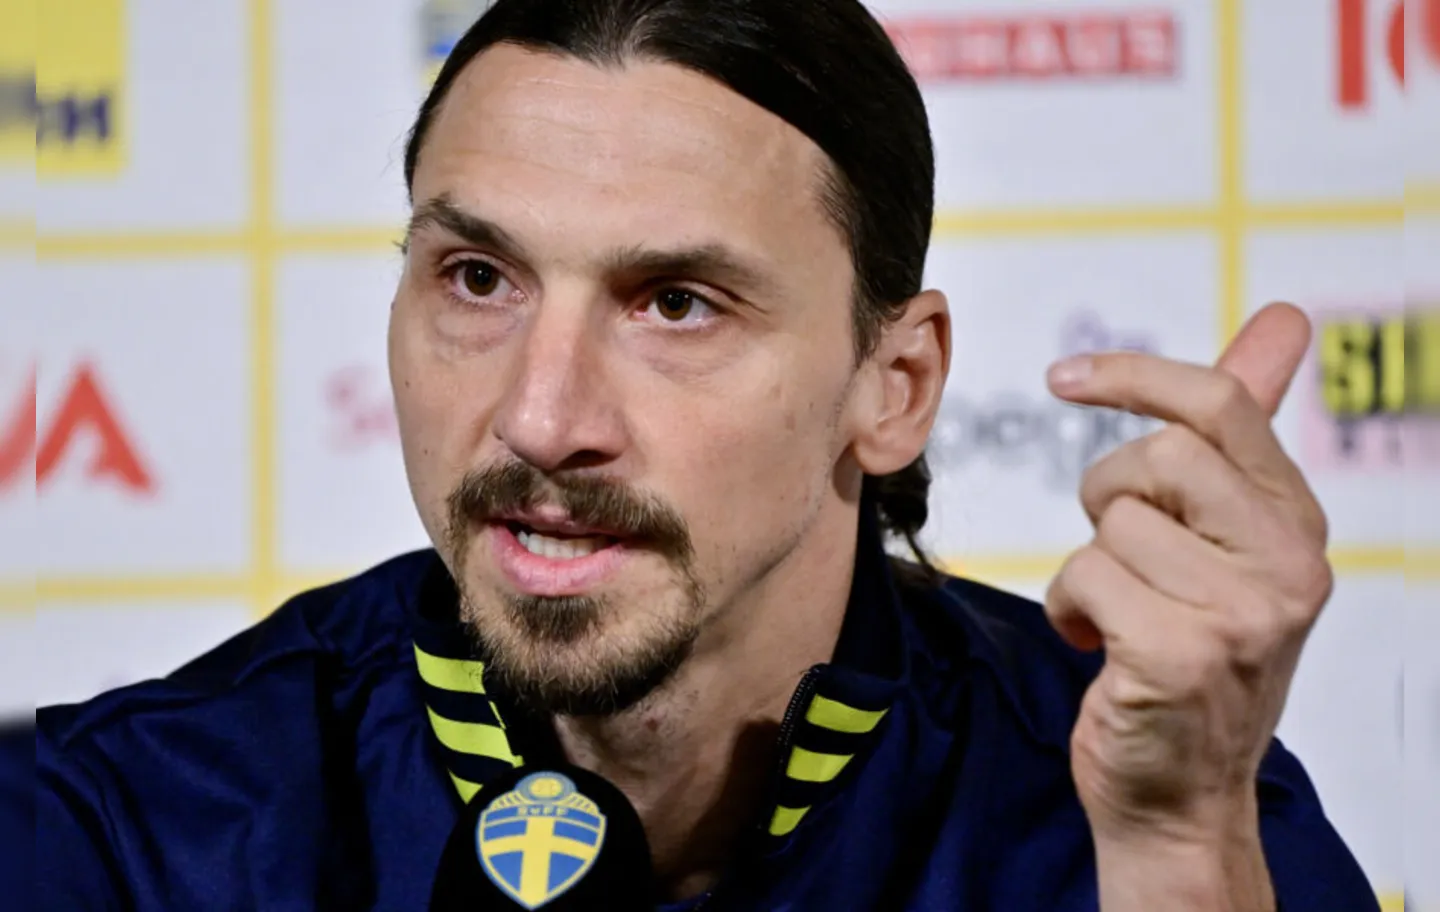 Convocado para a seleção sueca, atacante está suspenso para o confronto contra a República Tcheca